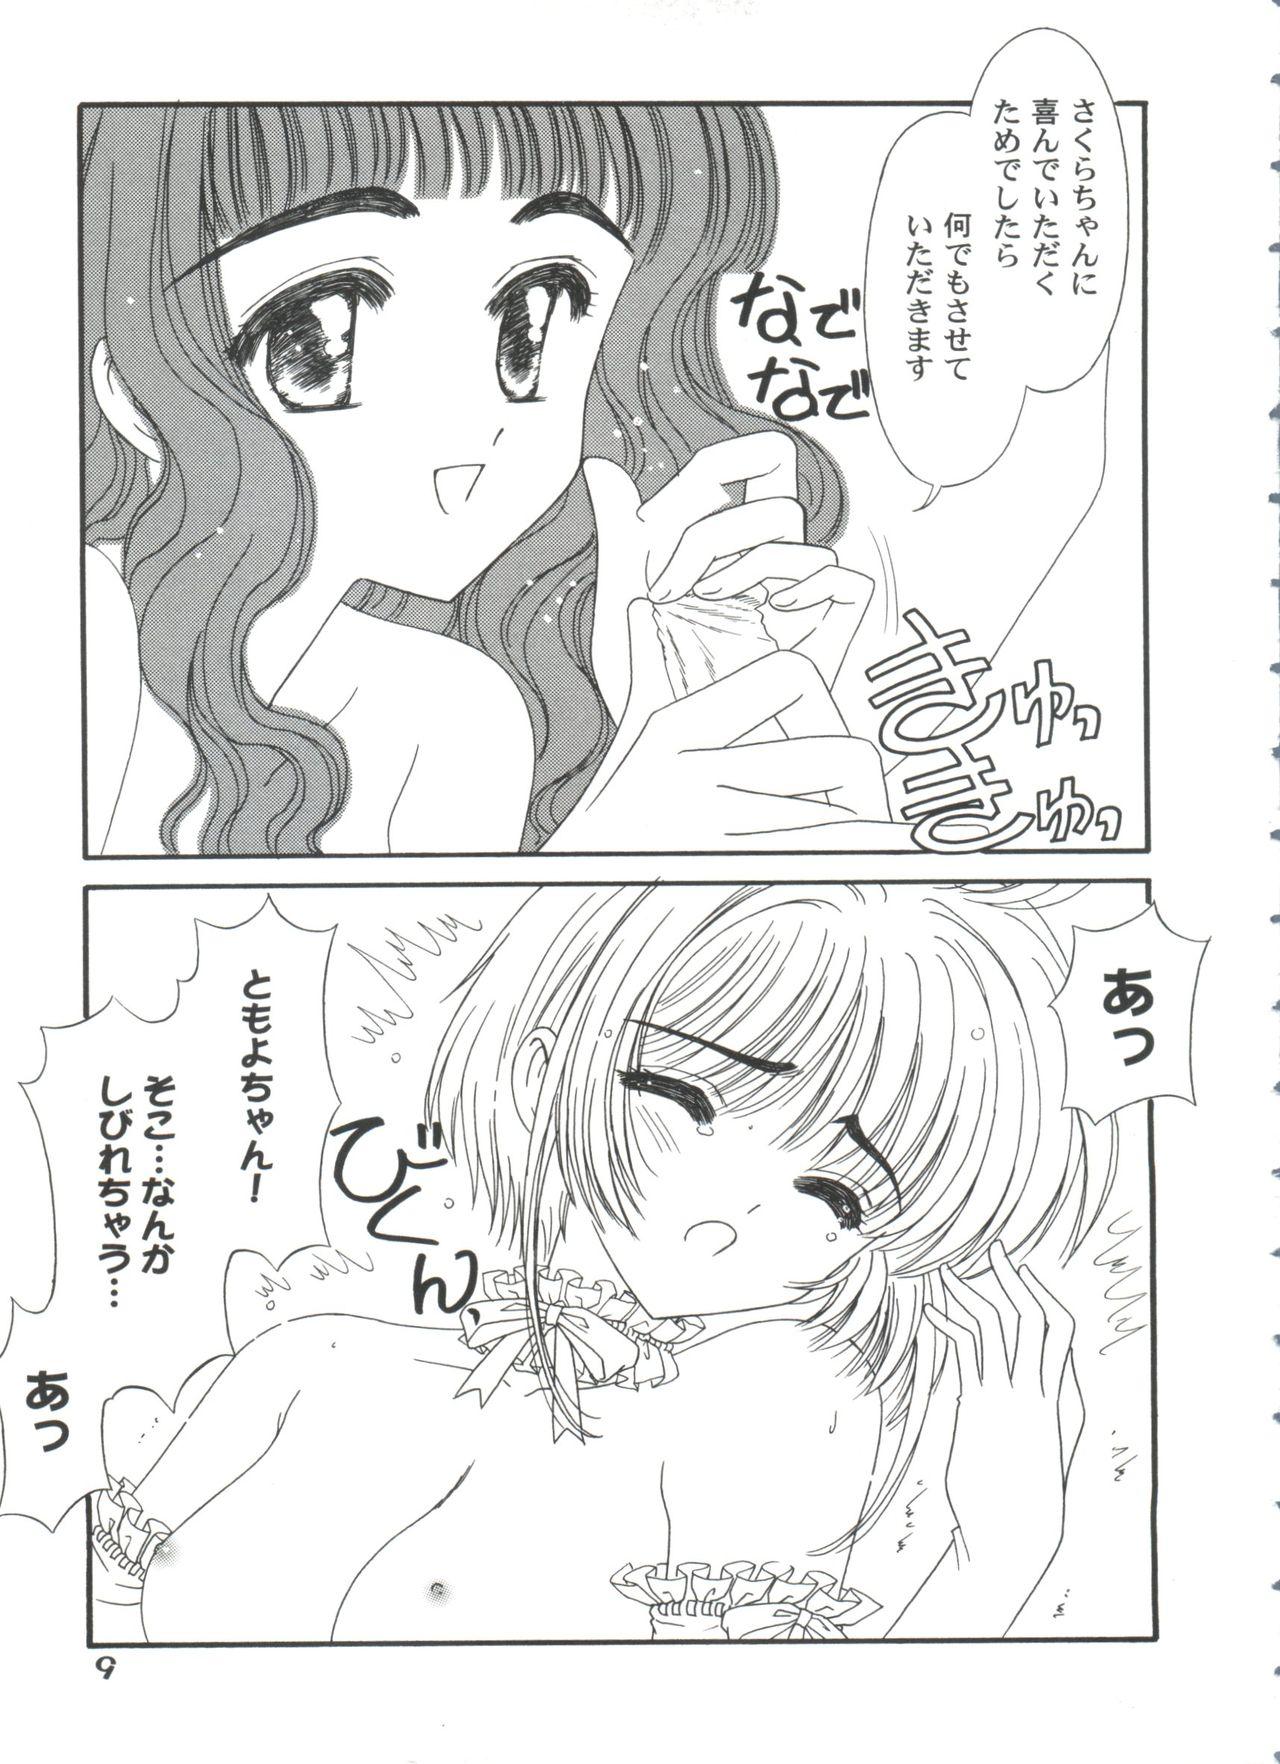 Lips Tomoeda Gakuen File 5 - Cardcaptor sakura Pregnant - Page 11